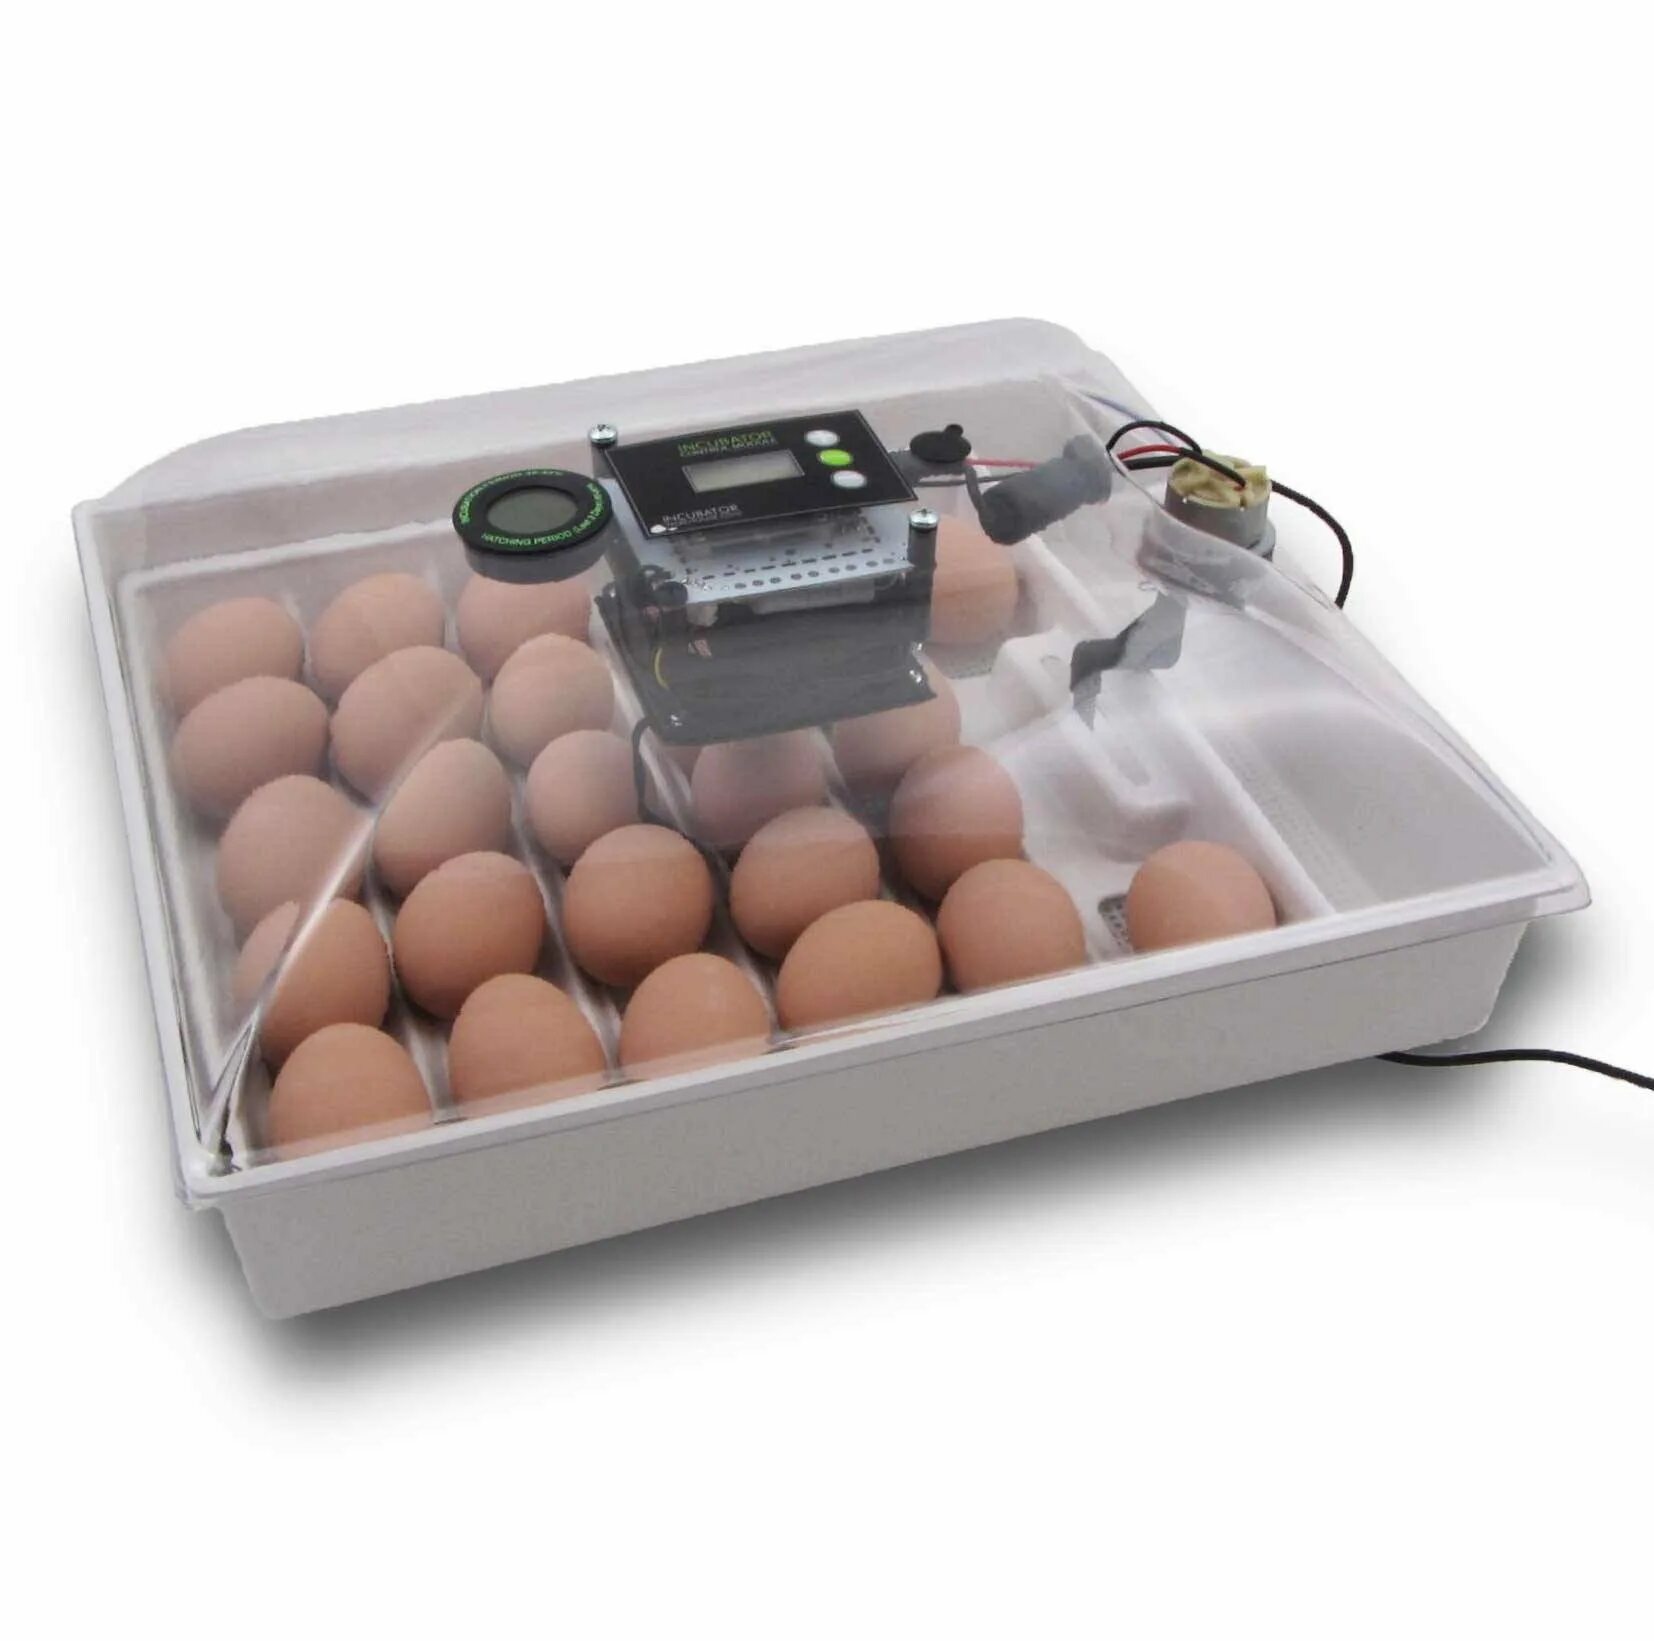 Лучшие инкубаторы для яиц для дома. Инкубатор Egg incubator. Инкубатор FLORAFLEX incubator Kit. Инкубатор SITITEK 36. Кв400 binger инкубатор для яиц.